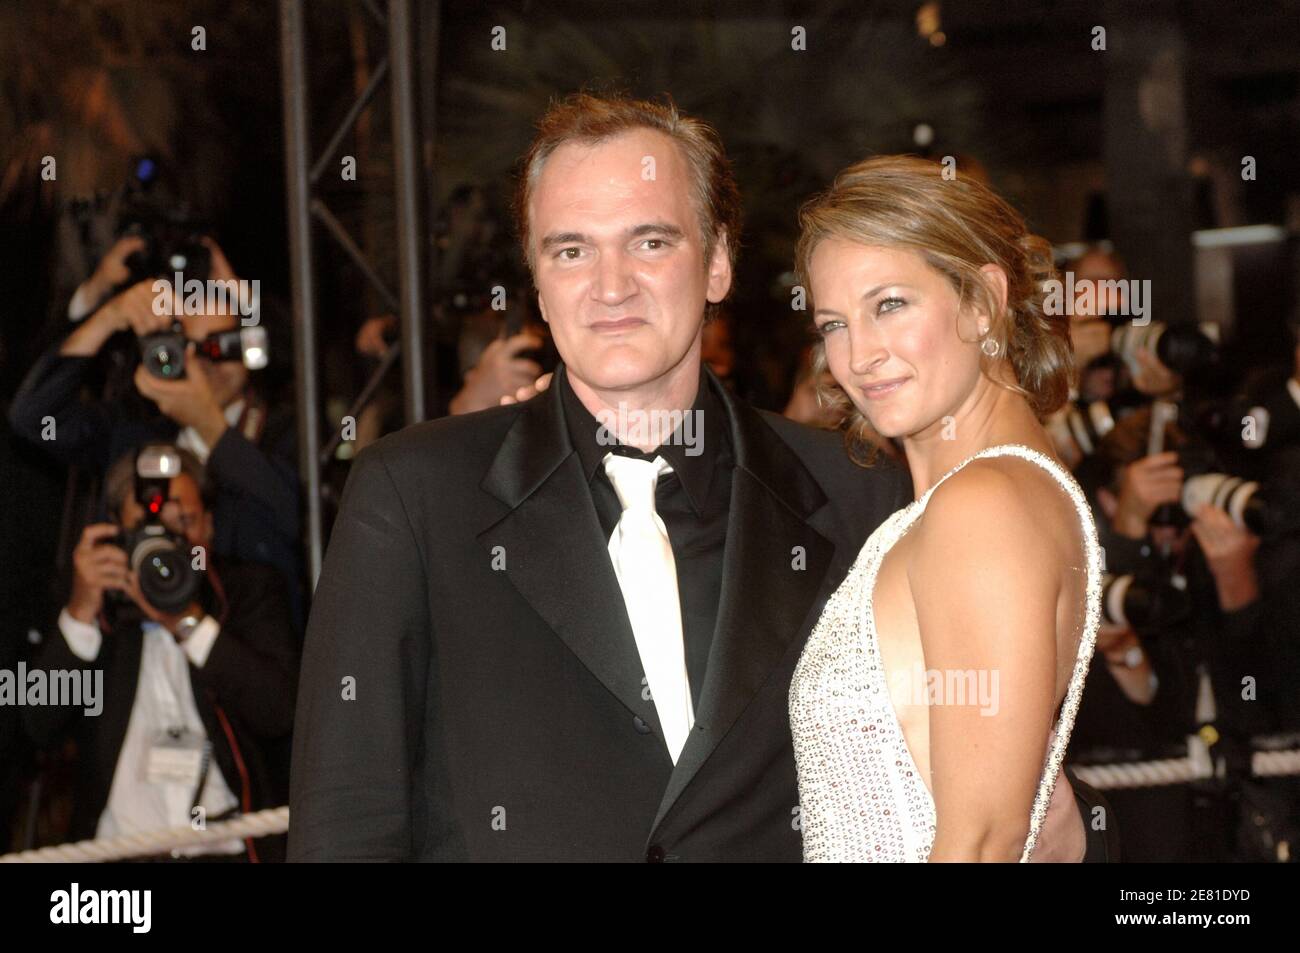 Il regista STATUNITENSE Quentin Tarantino e l'attrice di New Zealander Zoe Bell partecipano alla prima del film 'Death Proof' al Palais des Festivals durante il 60° Festival Internazionale del Cinema di Cannes, in Francia, il 22 maggio 2007. Foto di Giancarlo Gorassini/ABACAPRESS.COM Foto Stock